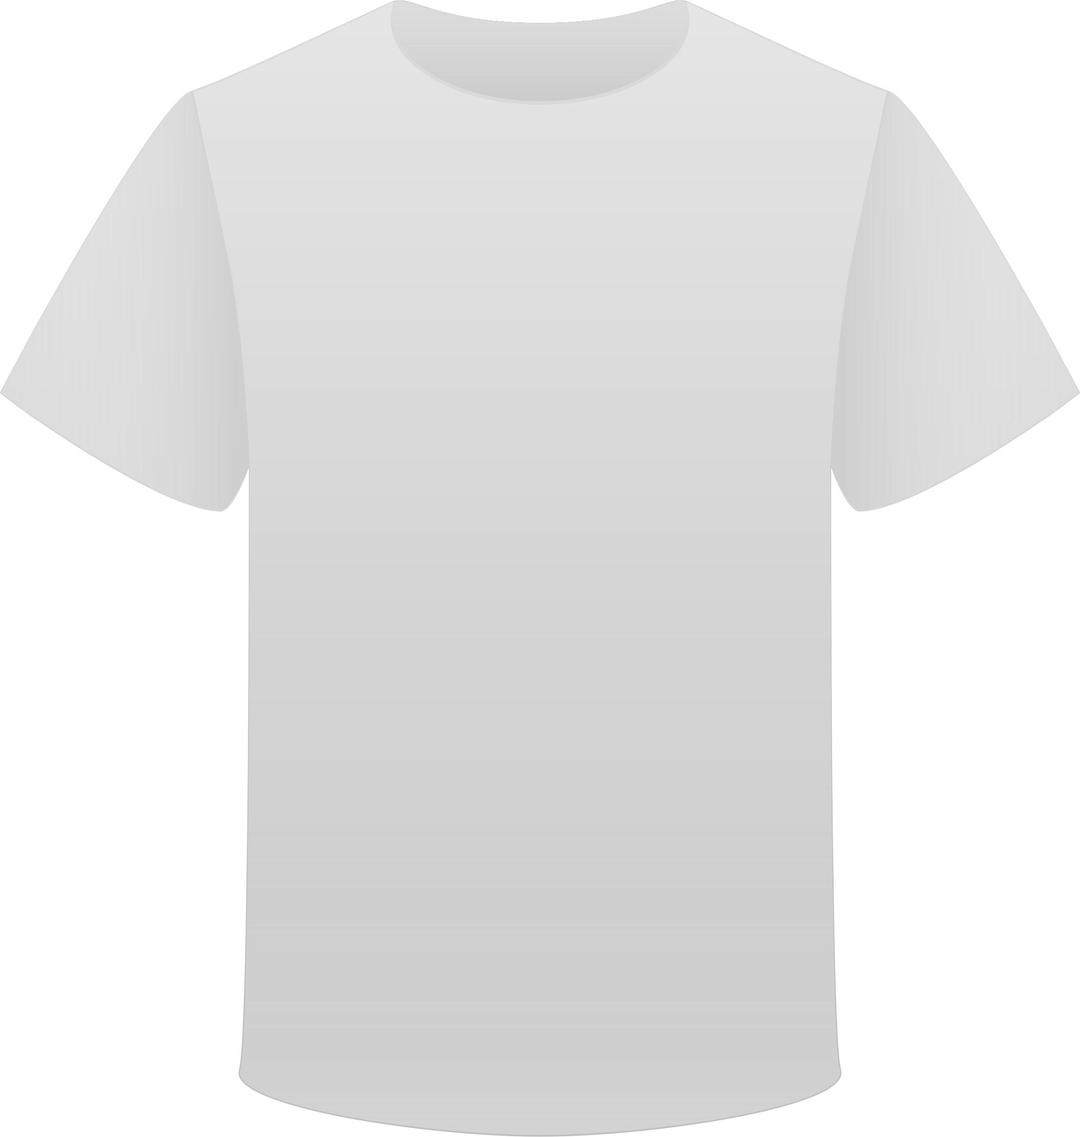 Gray T Shirt png transparent